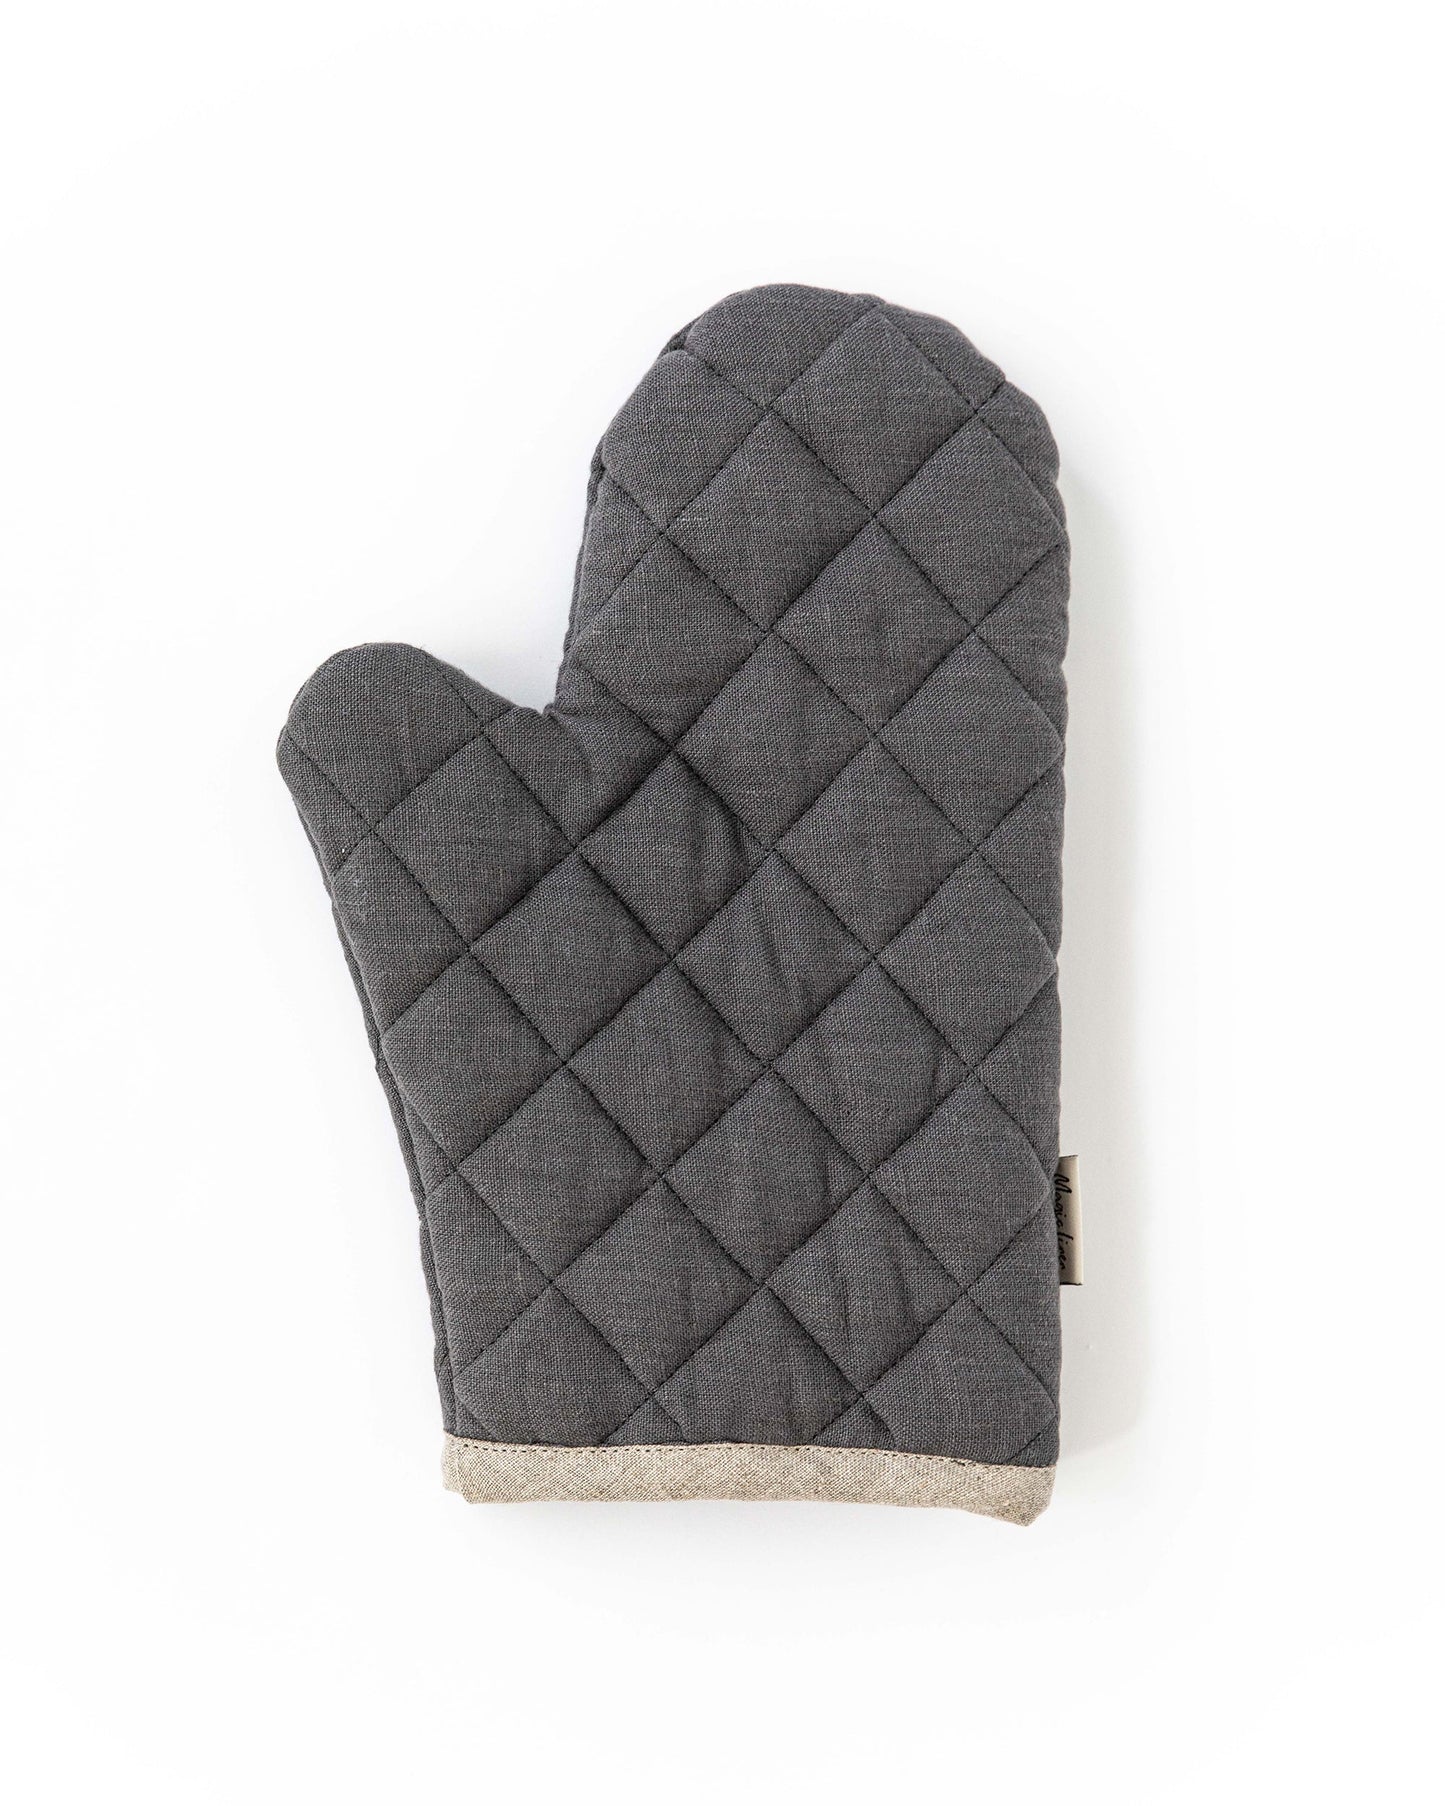 Linen oven mitt (1 pcs) in Charcoal gray - MagicLinen